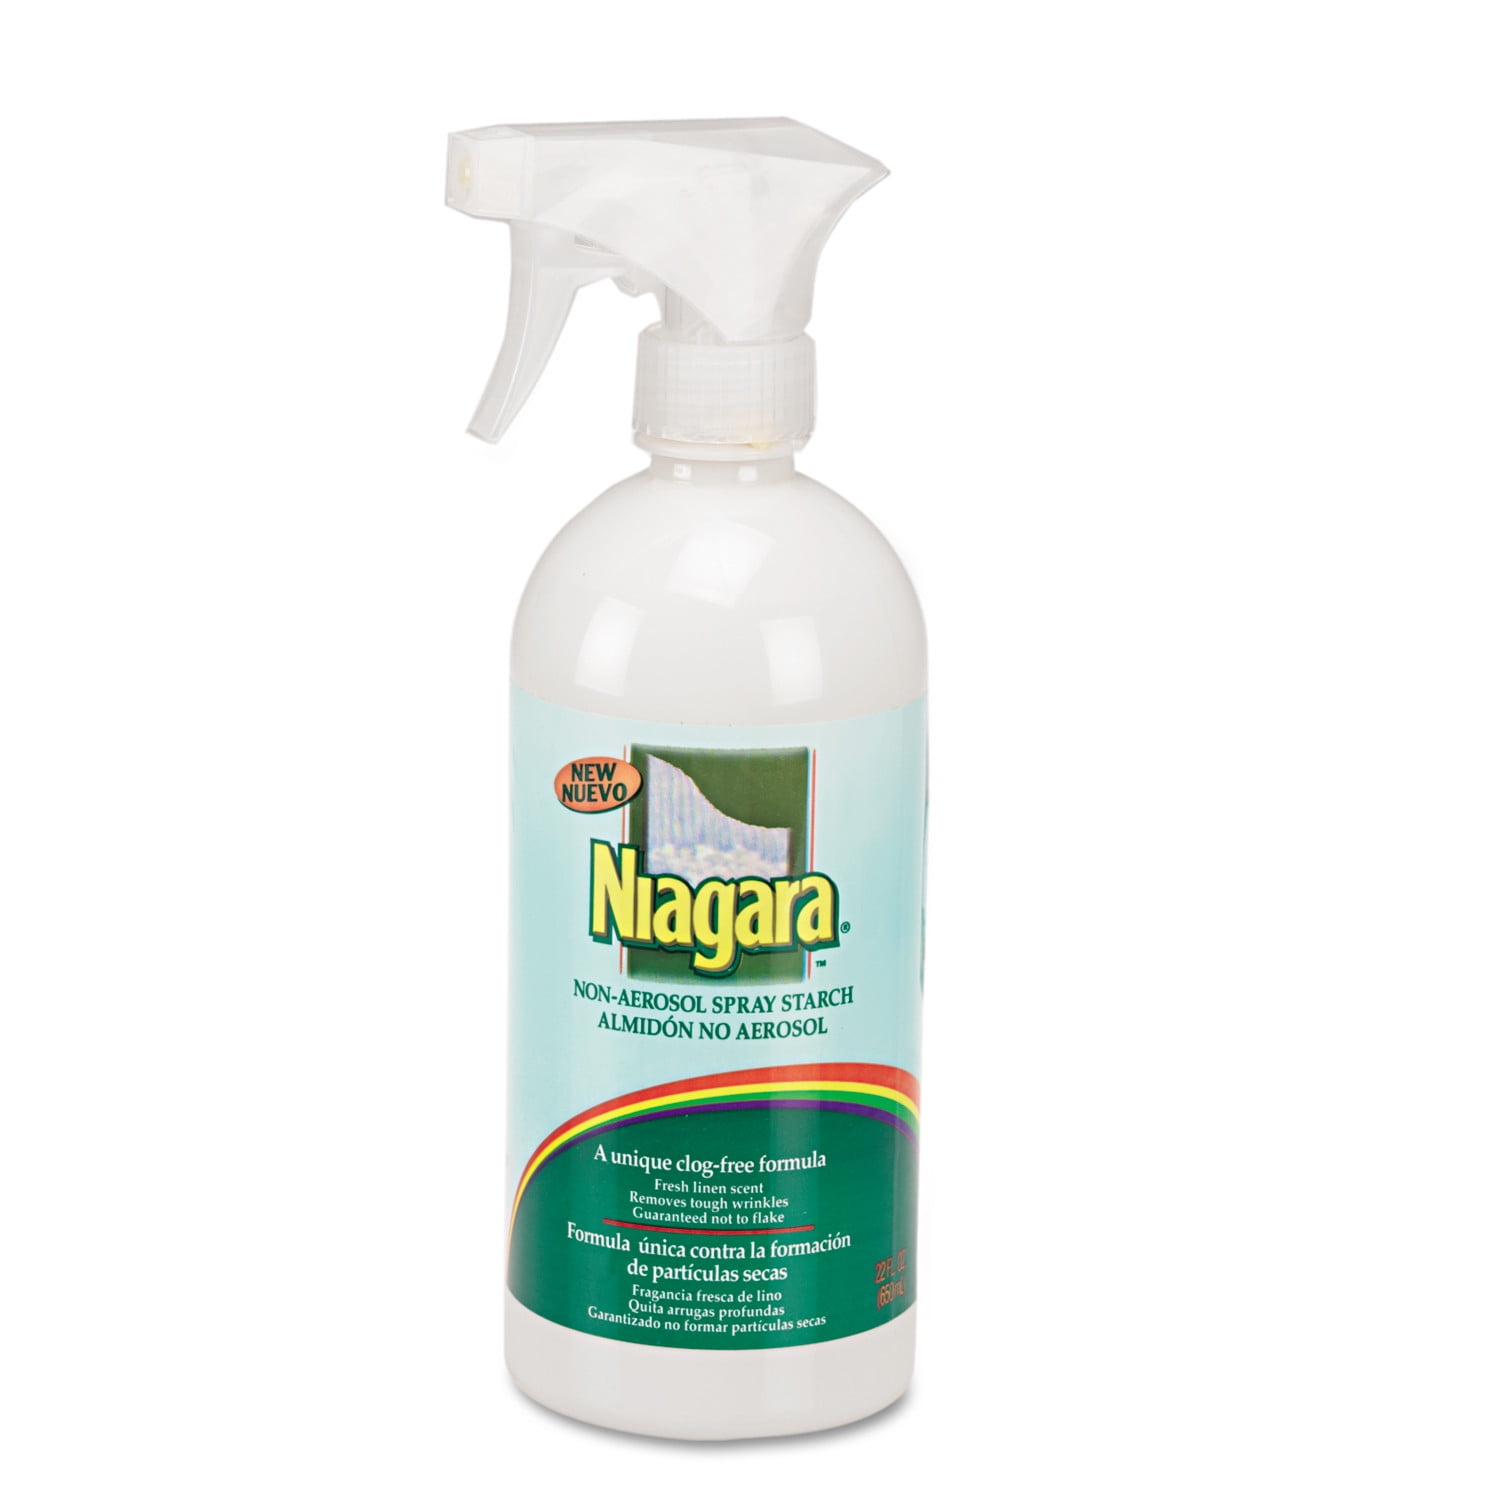 Reviews for Niagara 22 oz. Non-Aerosol Spray Starch